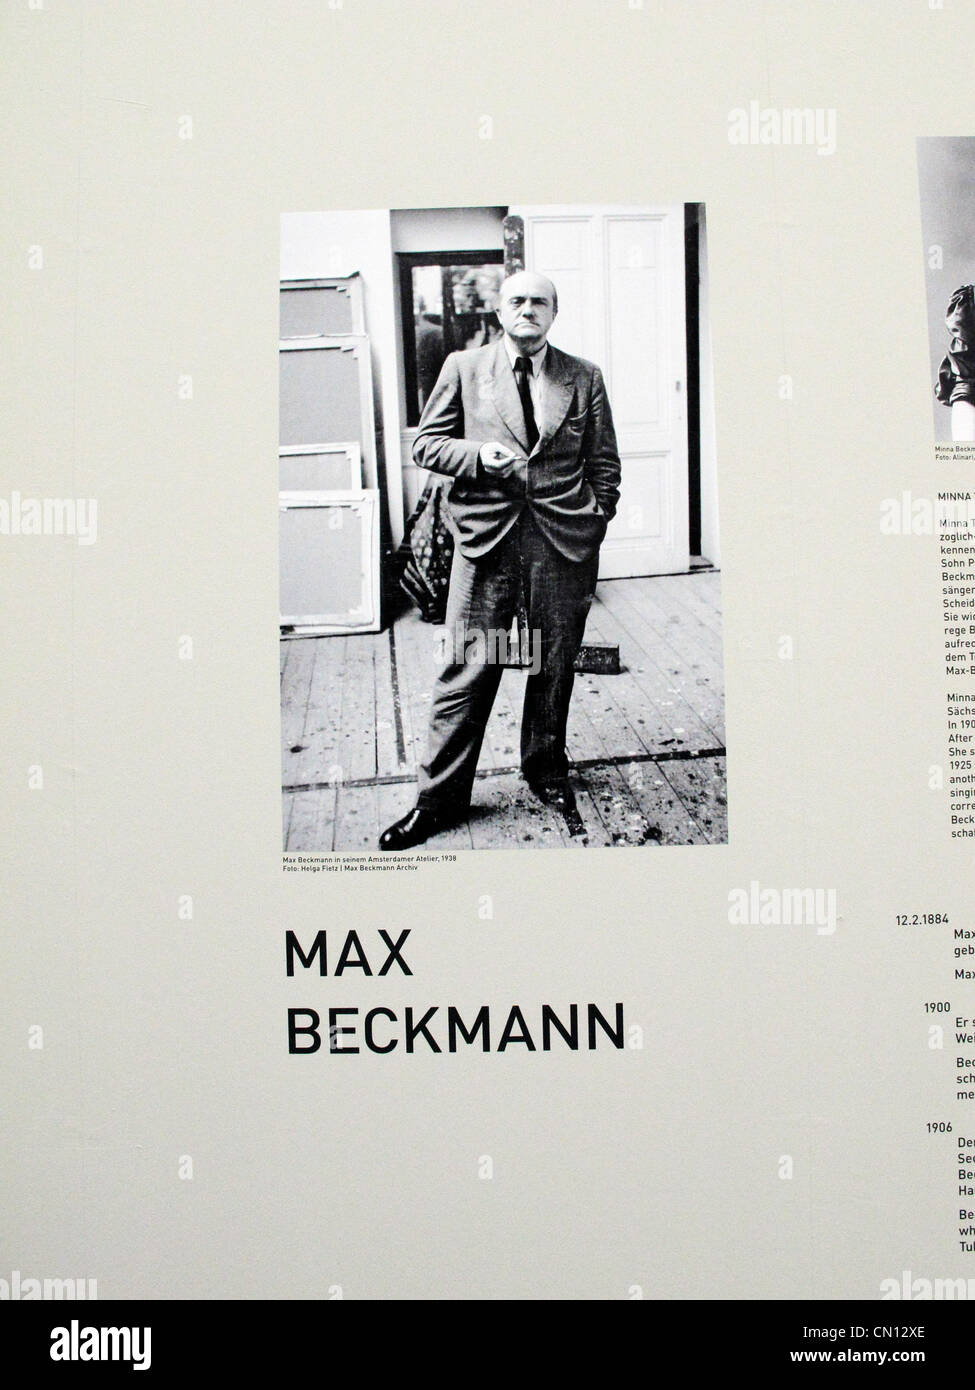 Allemagne Munich Pinakothek der Moderne "Les femmes" Picasso Beckmann De Kooning 2012 mars. Max Beckmann Banque D'Images